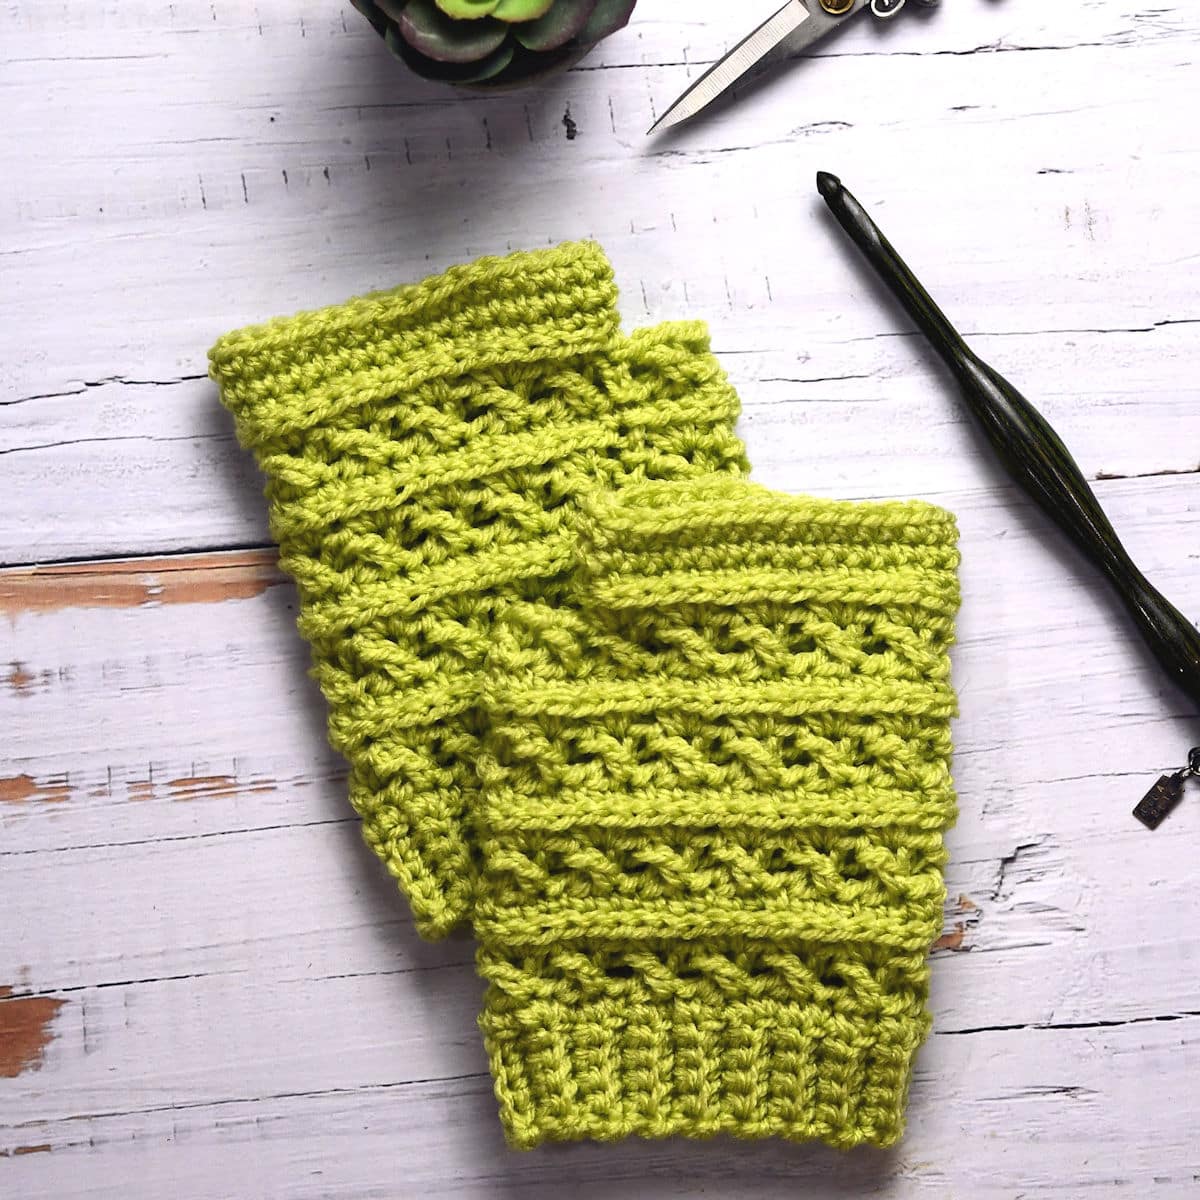 Sweet Pea fingerless gloves free crochet pattern in color pistachio